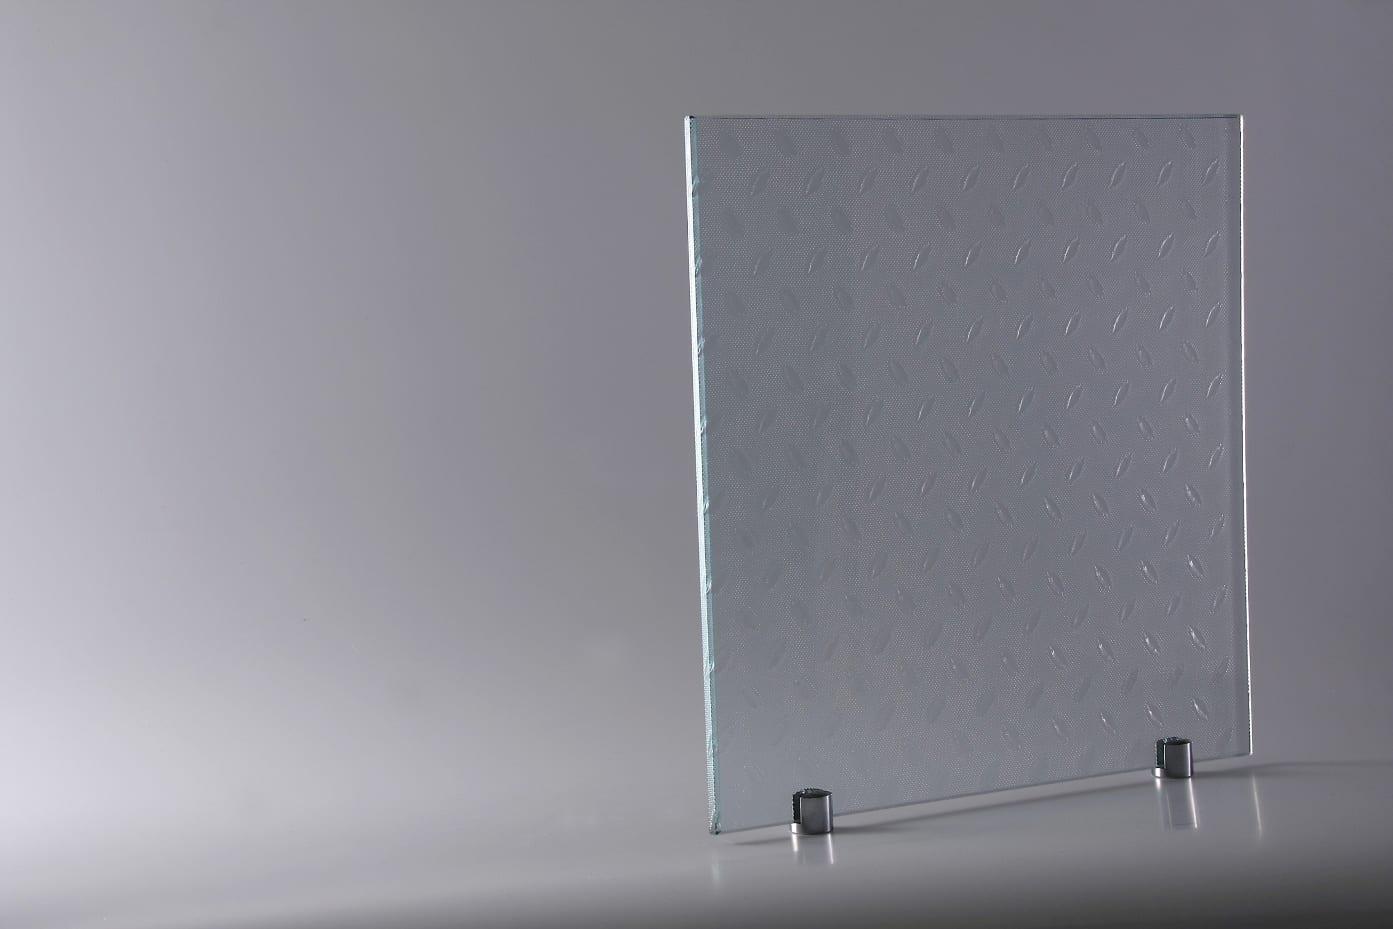 Amostras de vidro - amostra de vidros - amostra de vidro - a importância da amostra de vidro